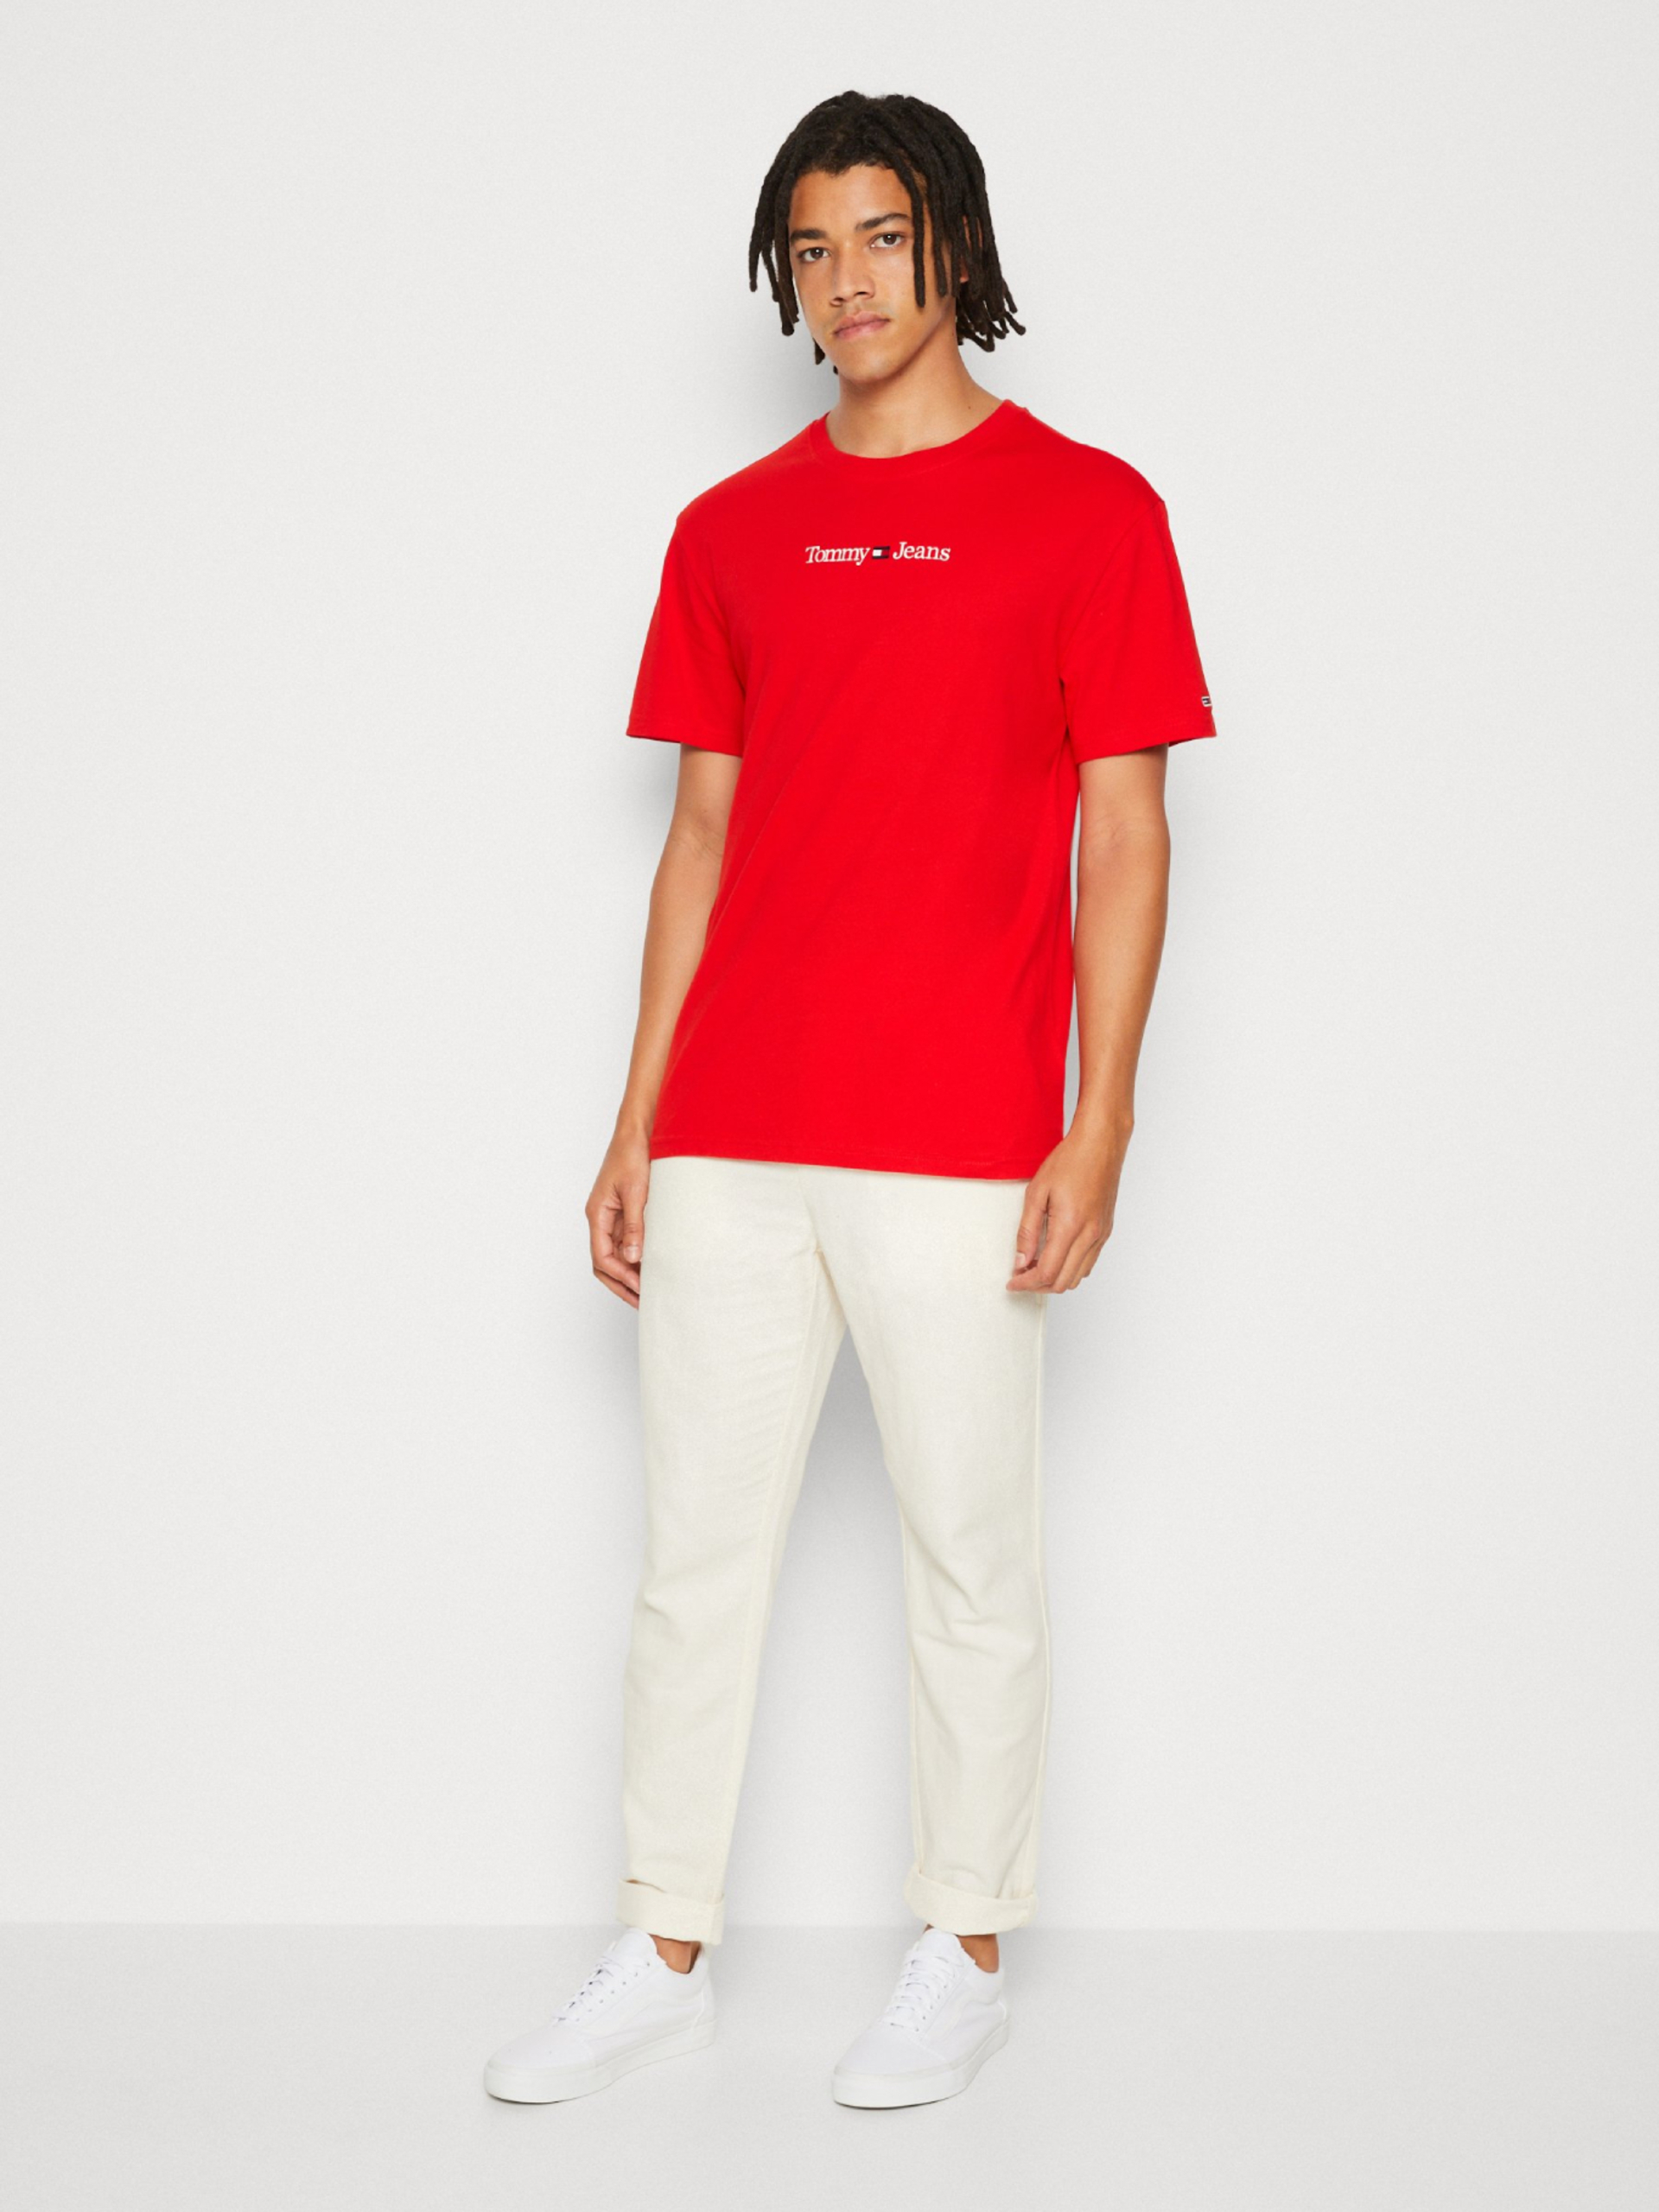 Tommy Jeans pánské červené triko